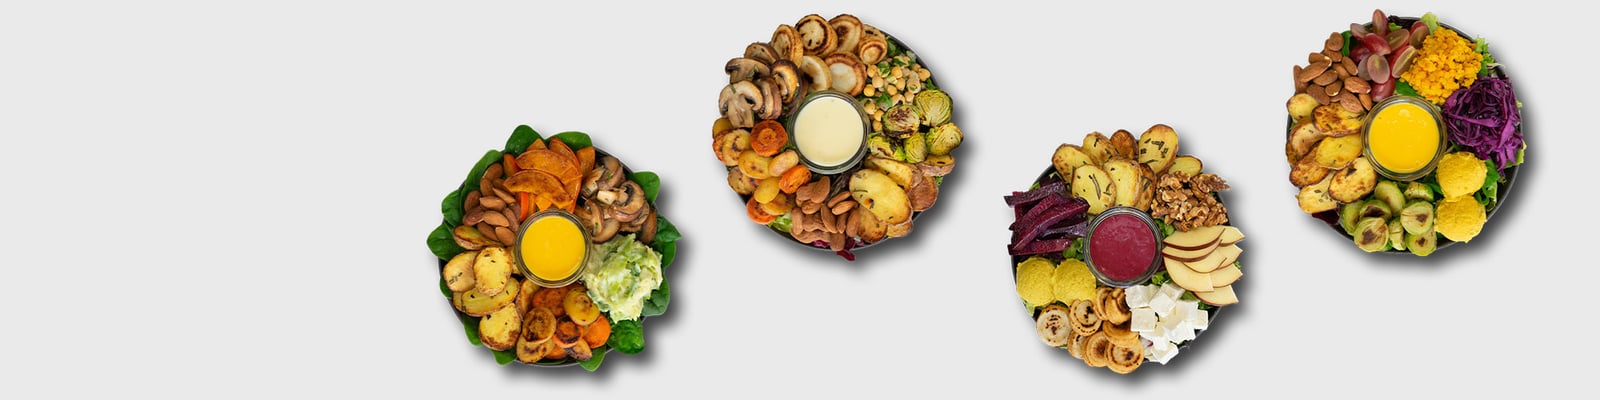 MaKE. Salate, Bowls & Suppen Warengruppenbild